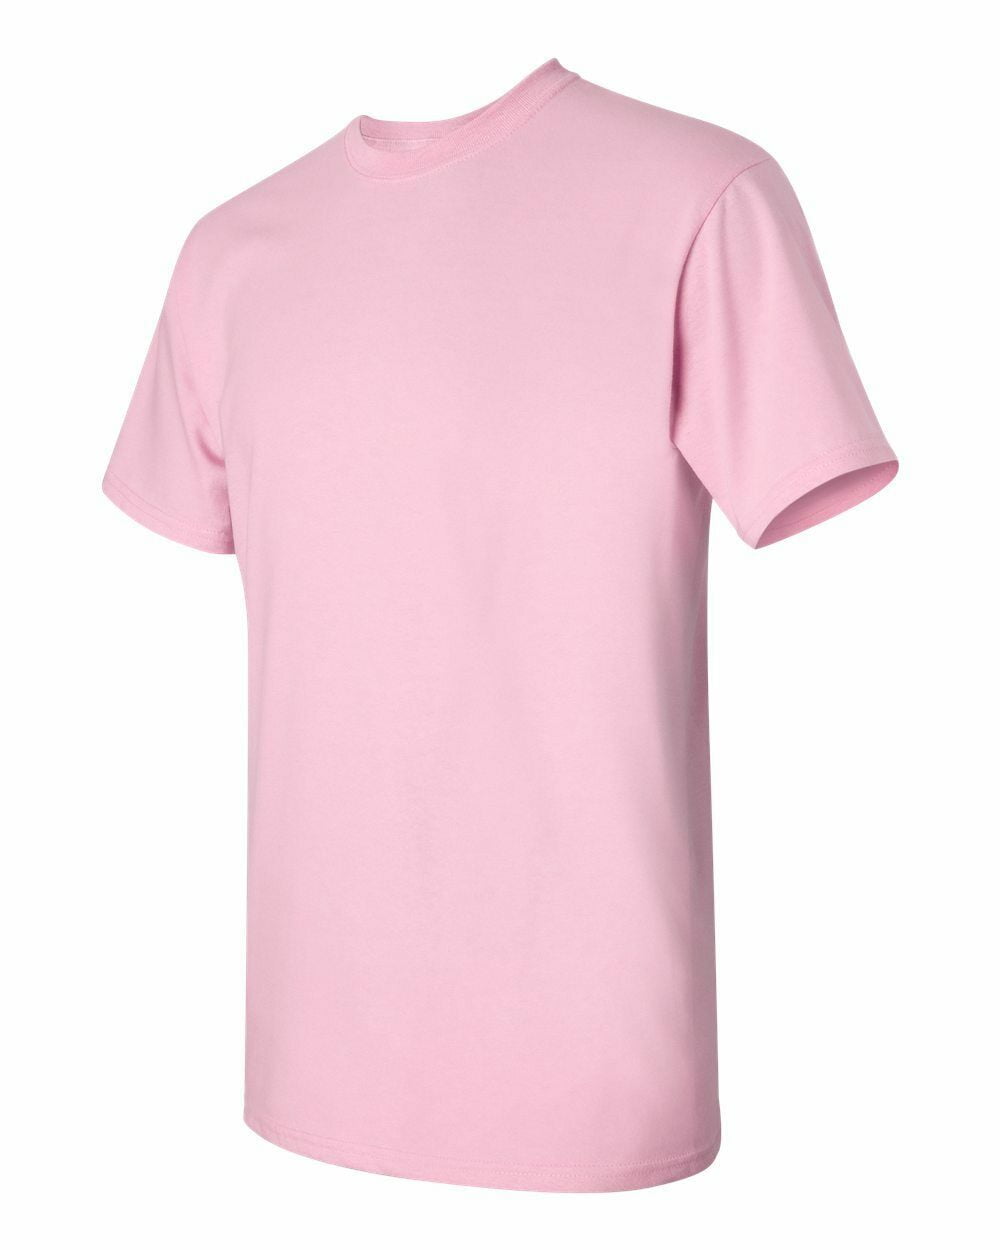 plain light pink t shirt